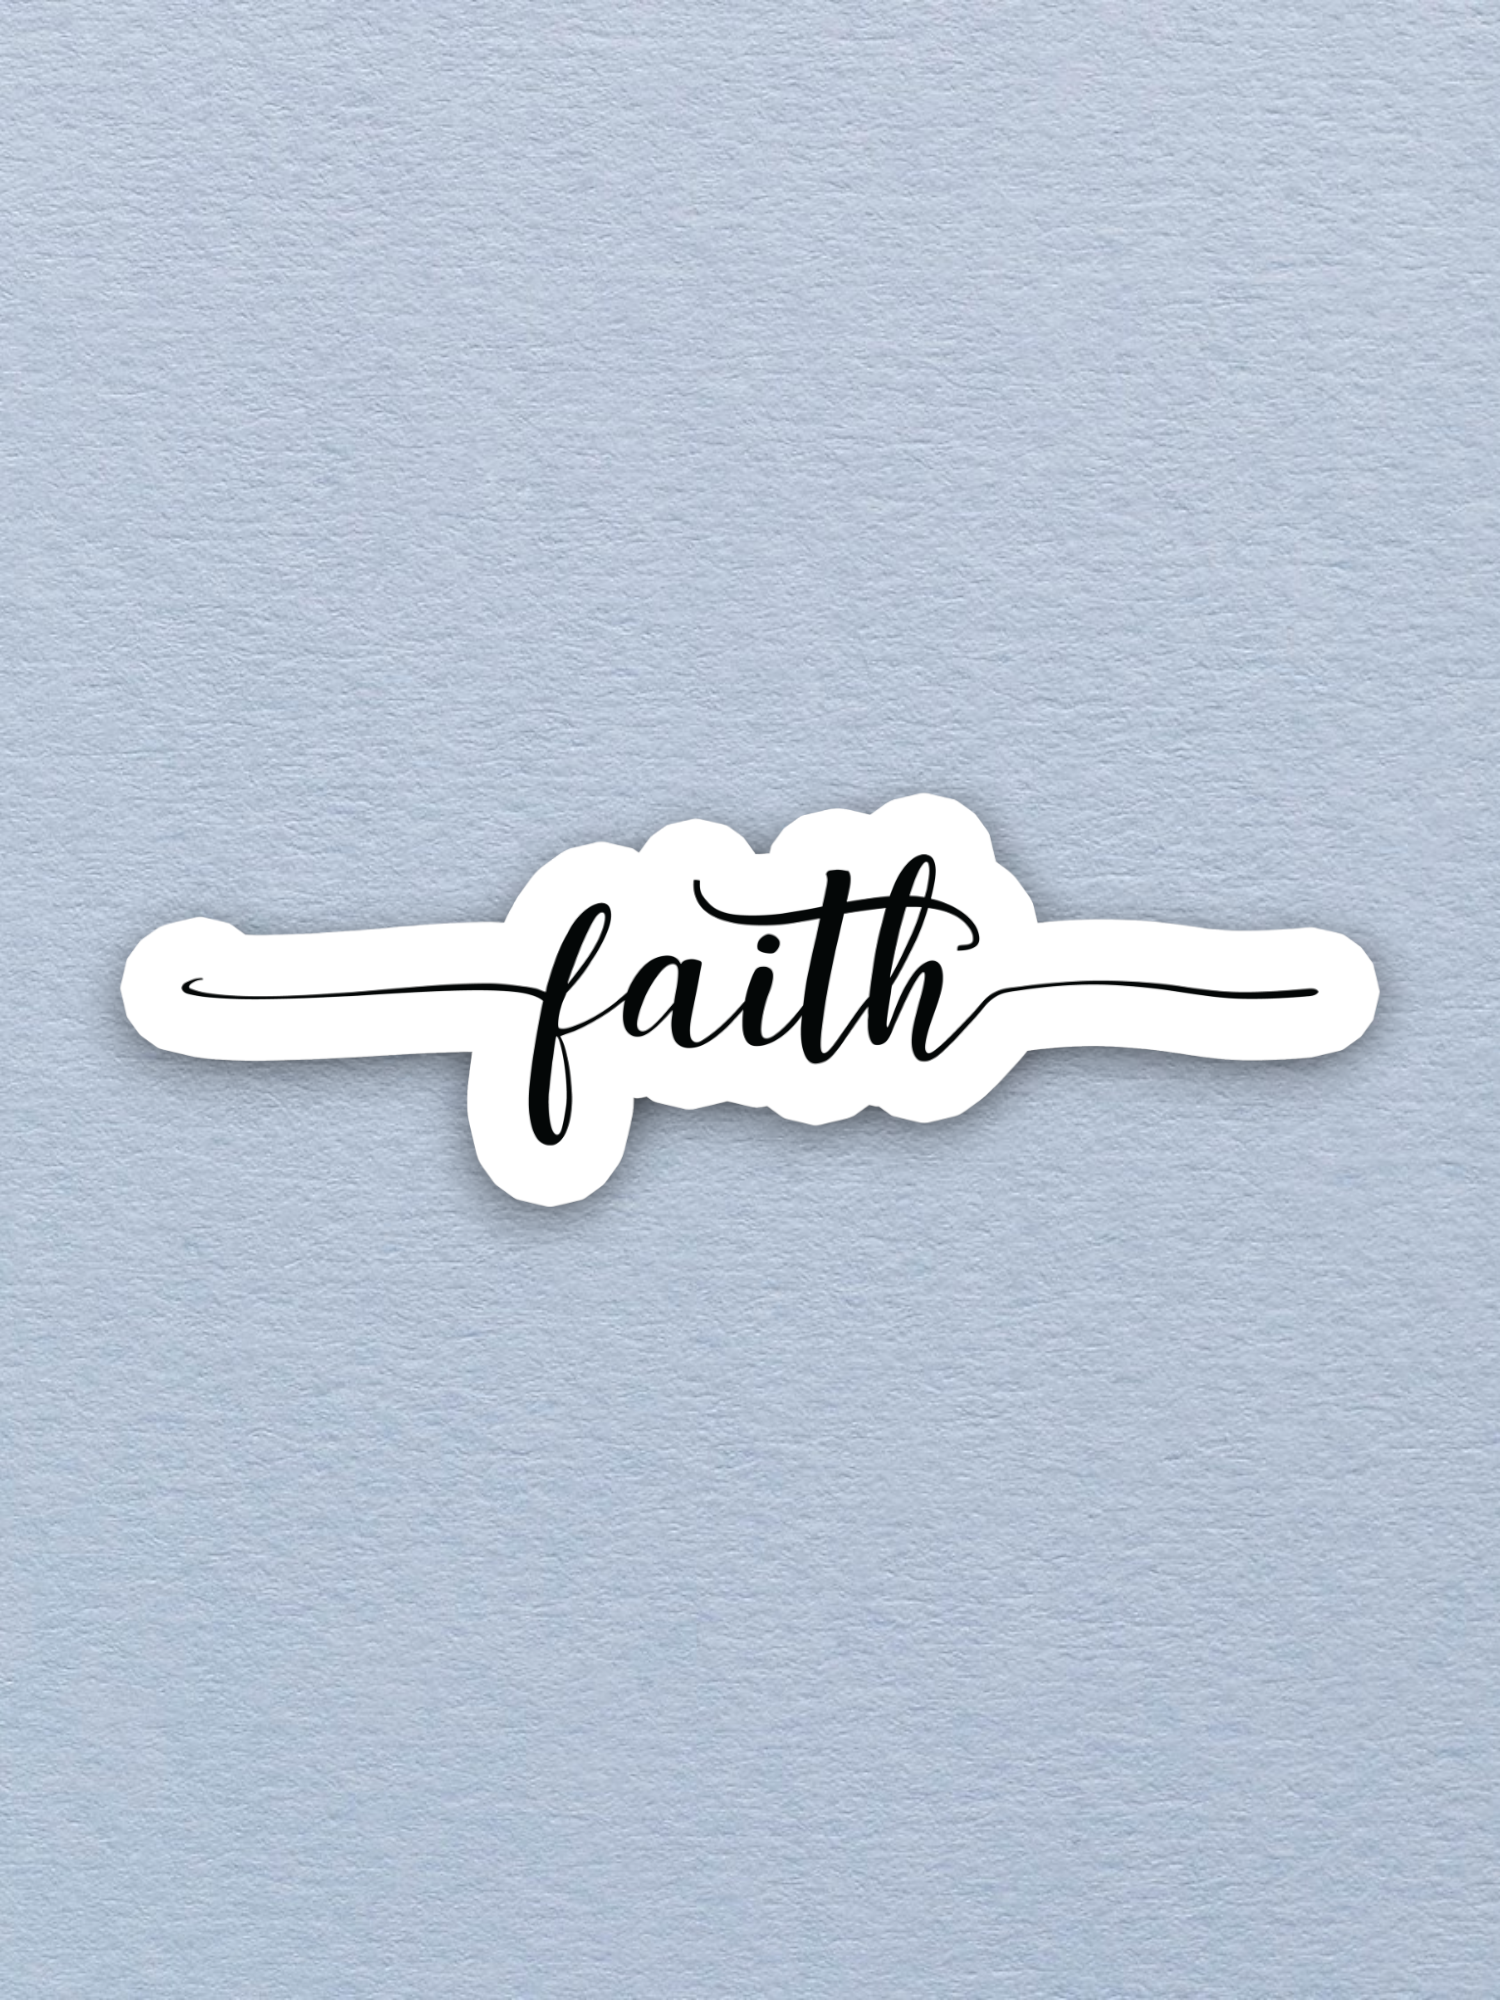 Faith 03 - Faith Sticker